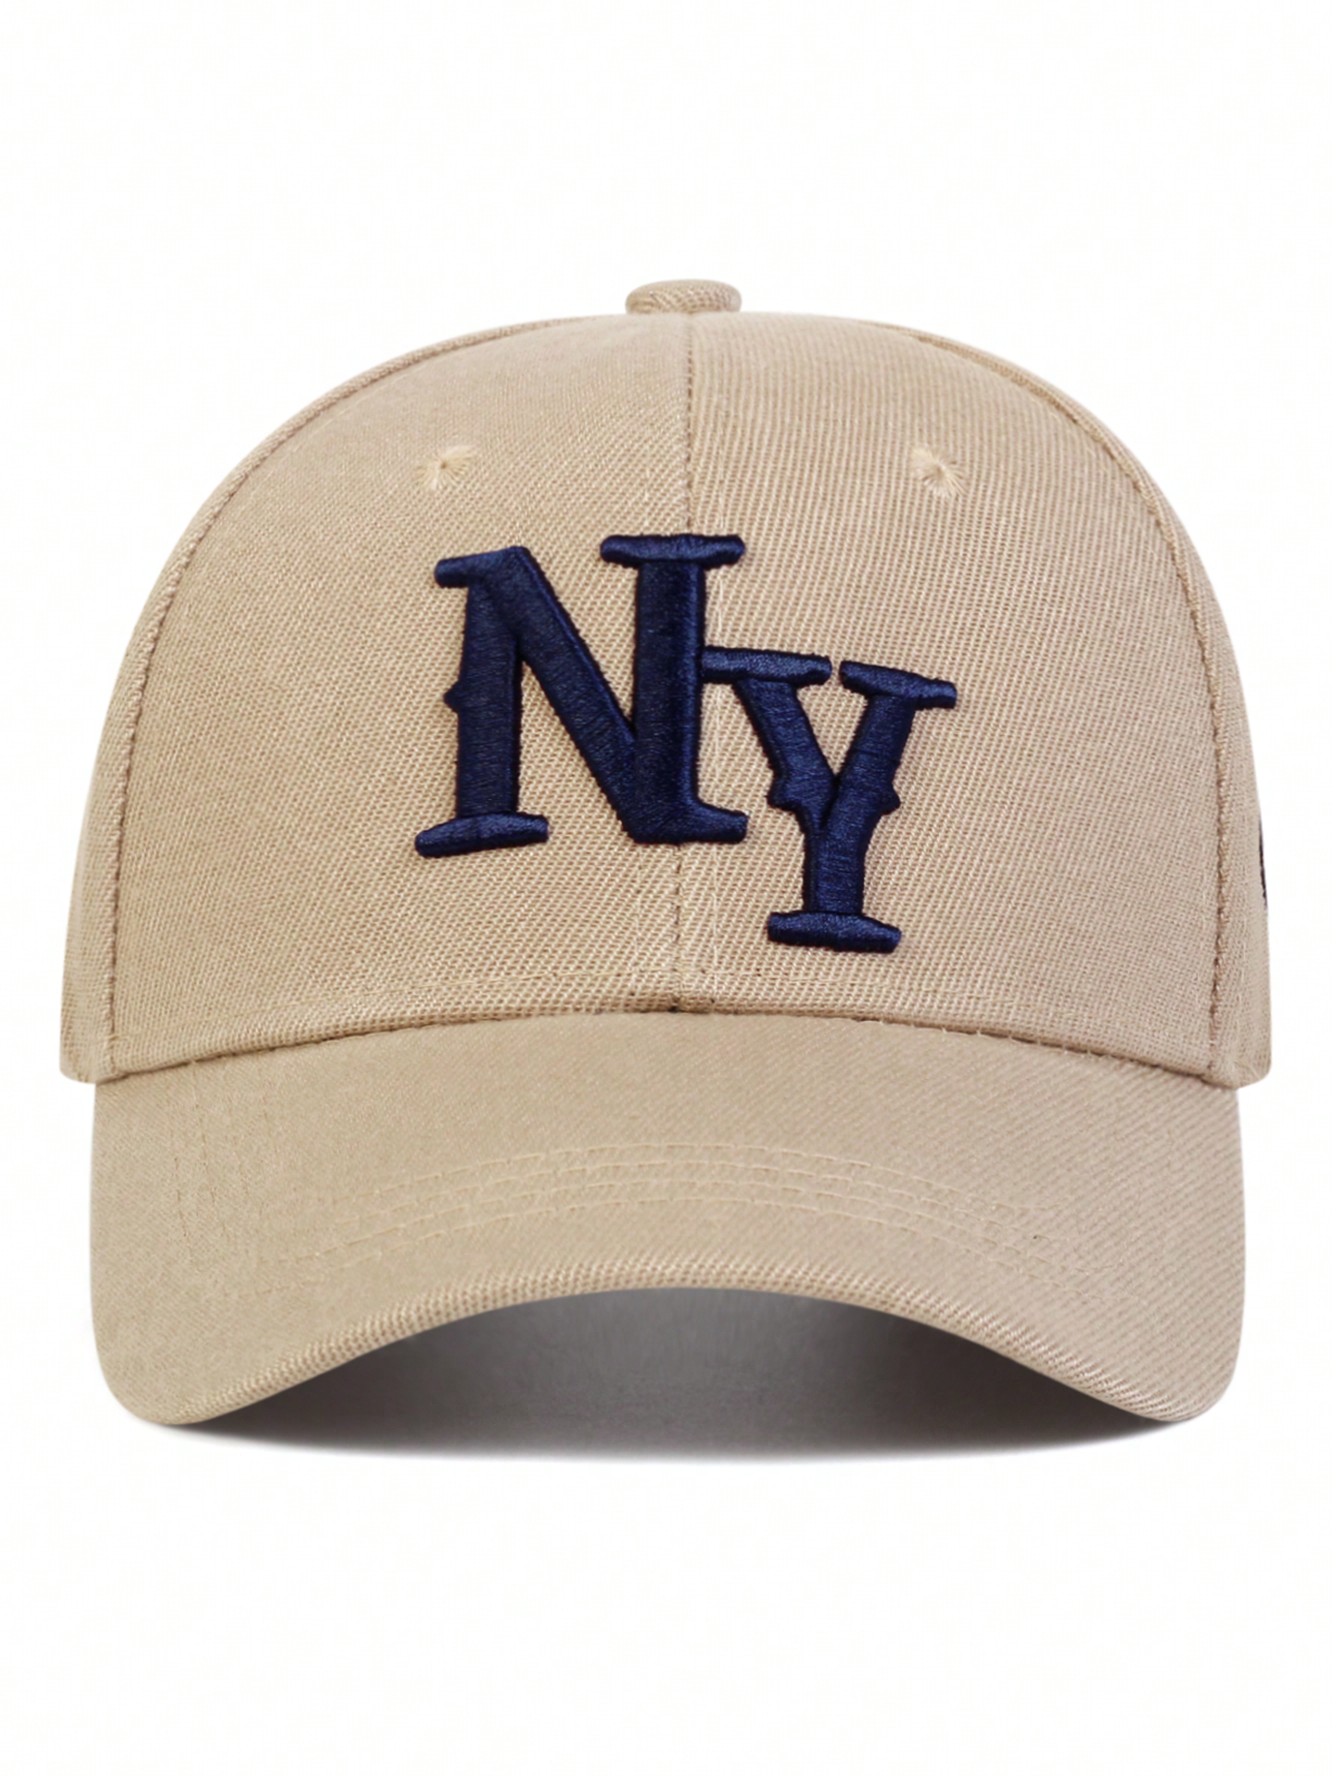 цена 1 шт. мужская бейсболка с вышивкой букв «Нью-Йорк», хаки